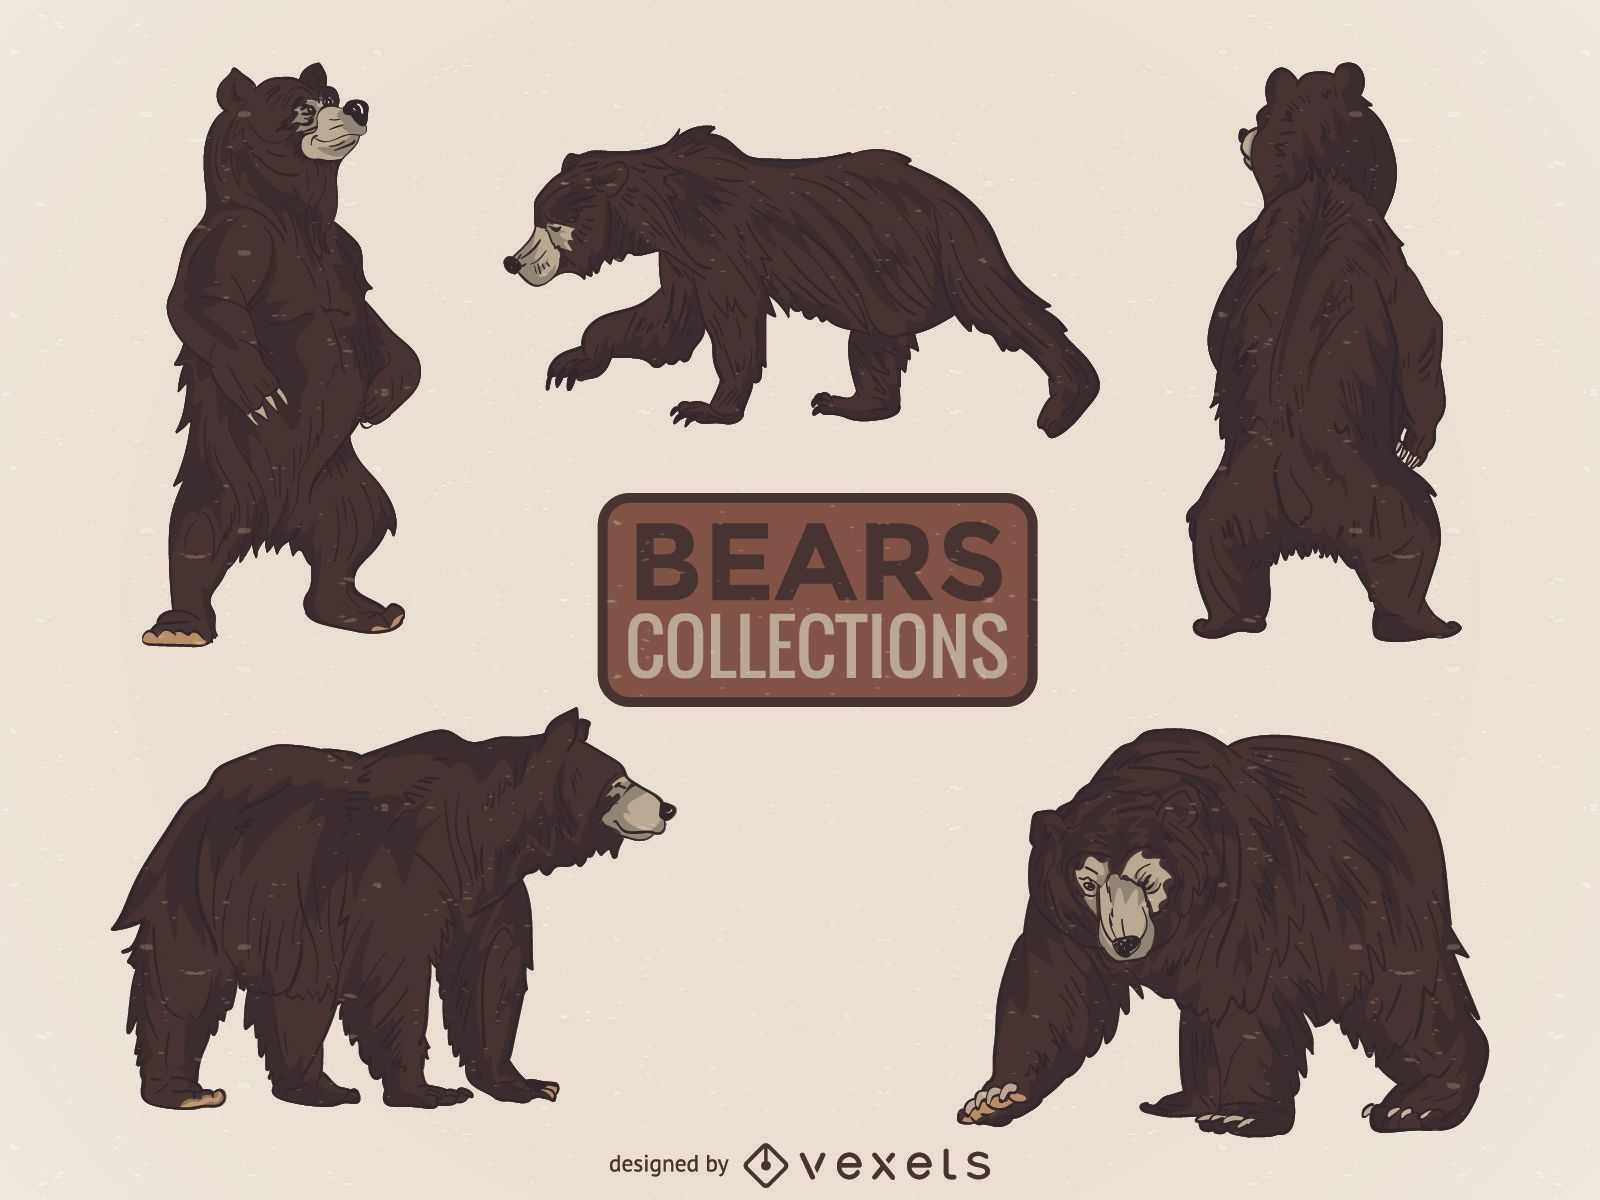 Cole??o ilustrada de ursos selvagens